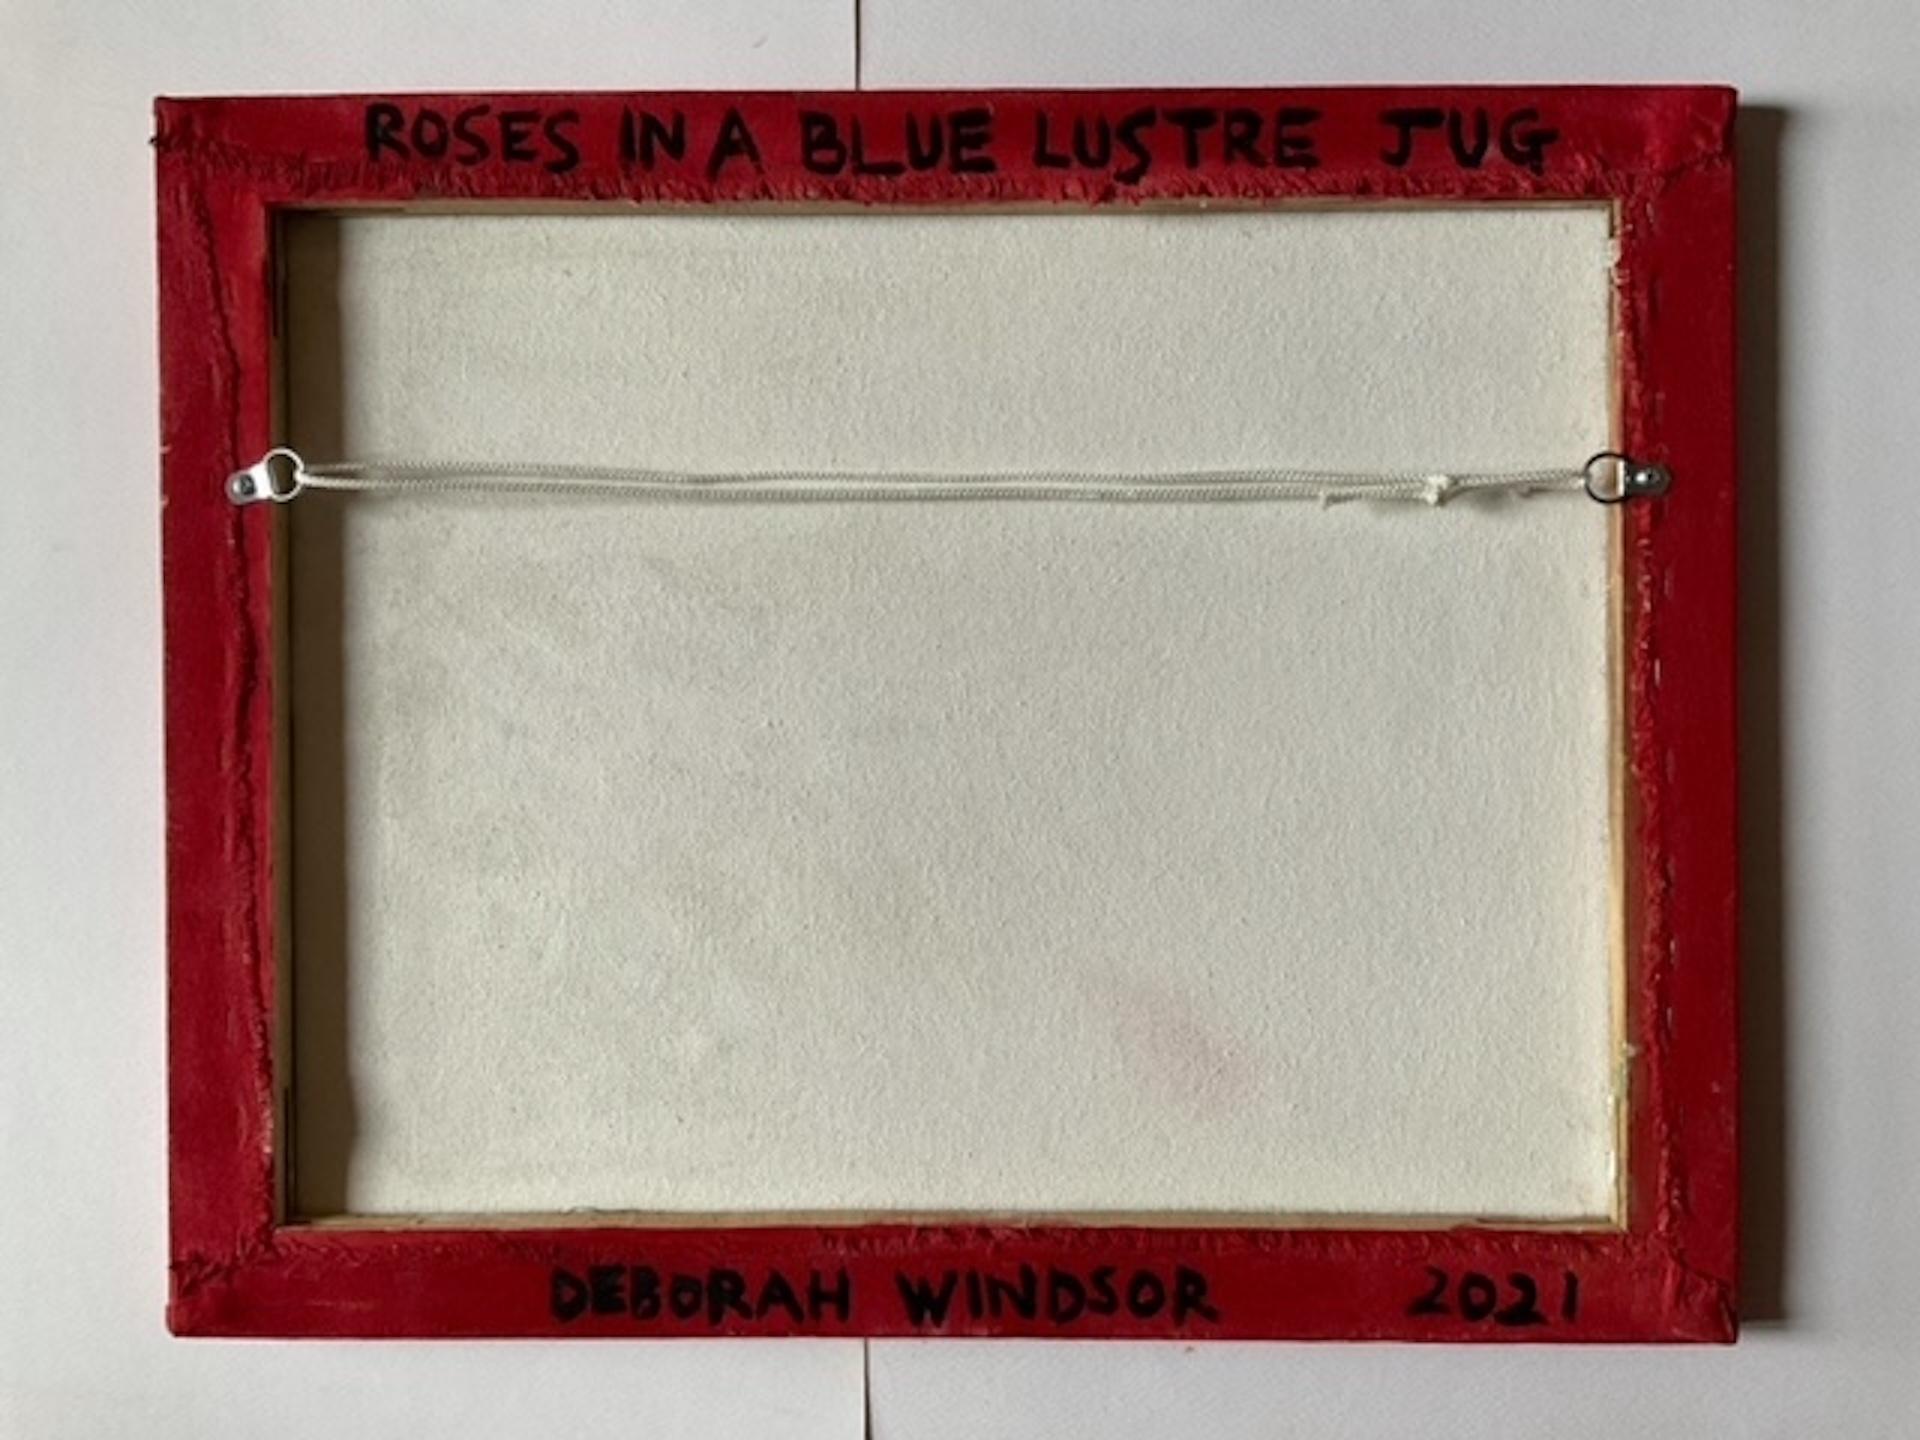 Deborah Windsor, Roses In A Blue Lustre Jug, Floral Still Life Painting For Sale 3